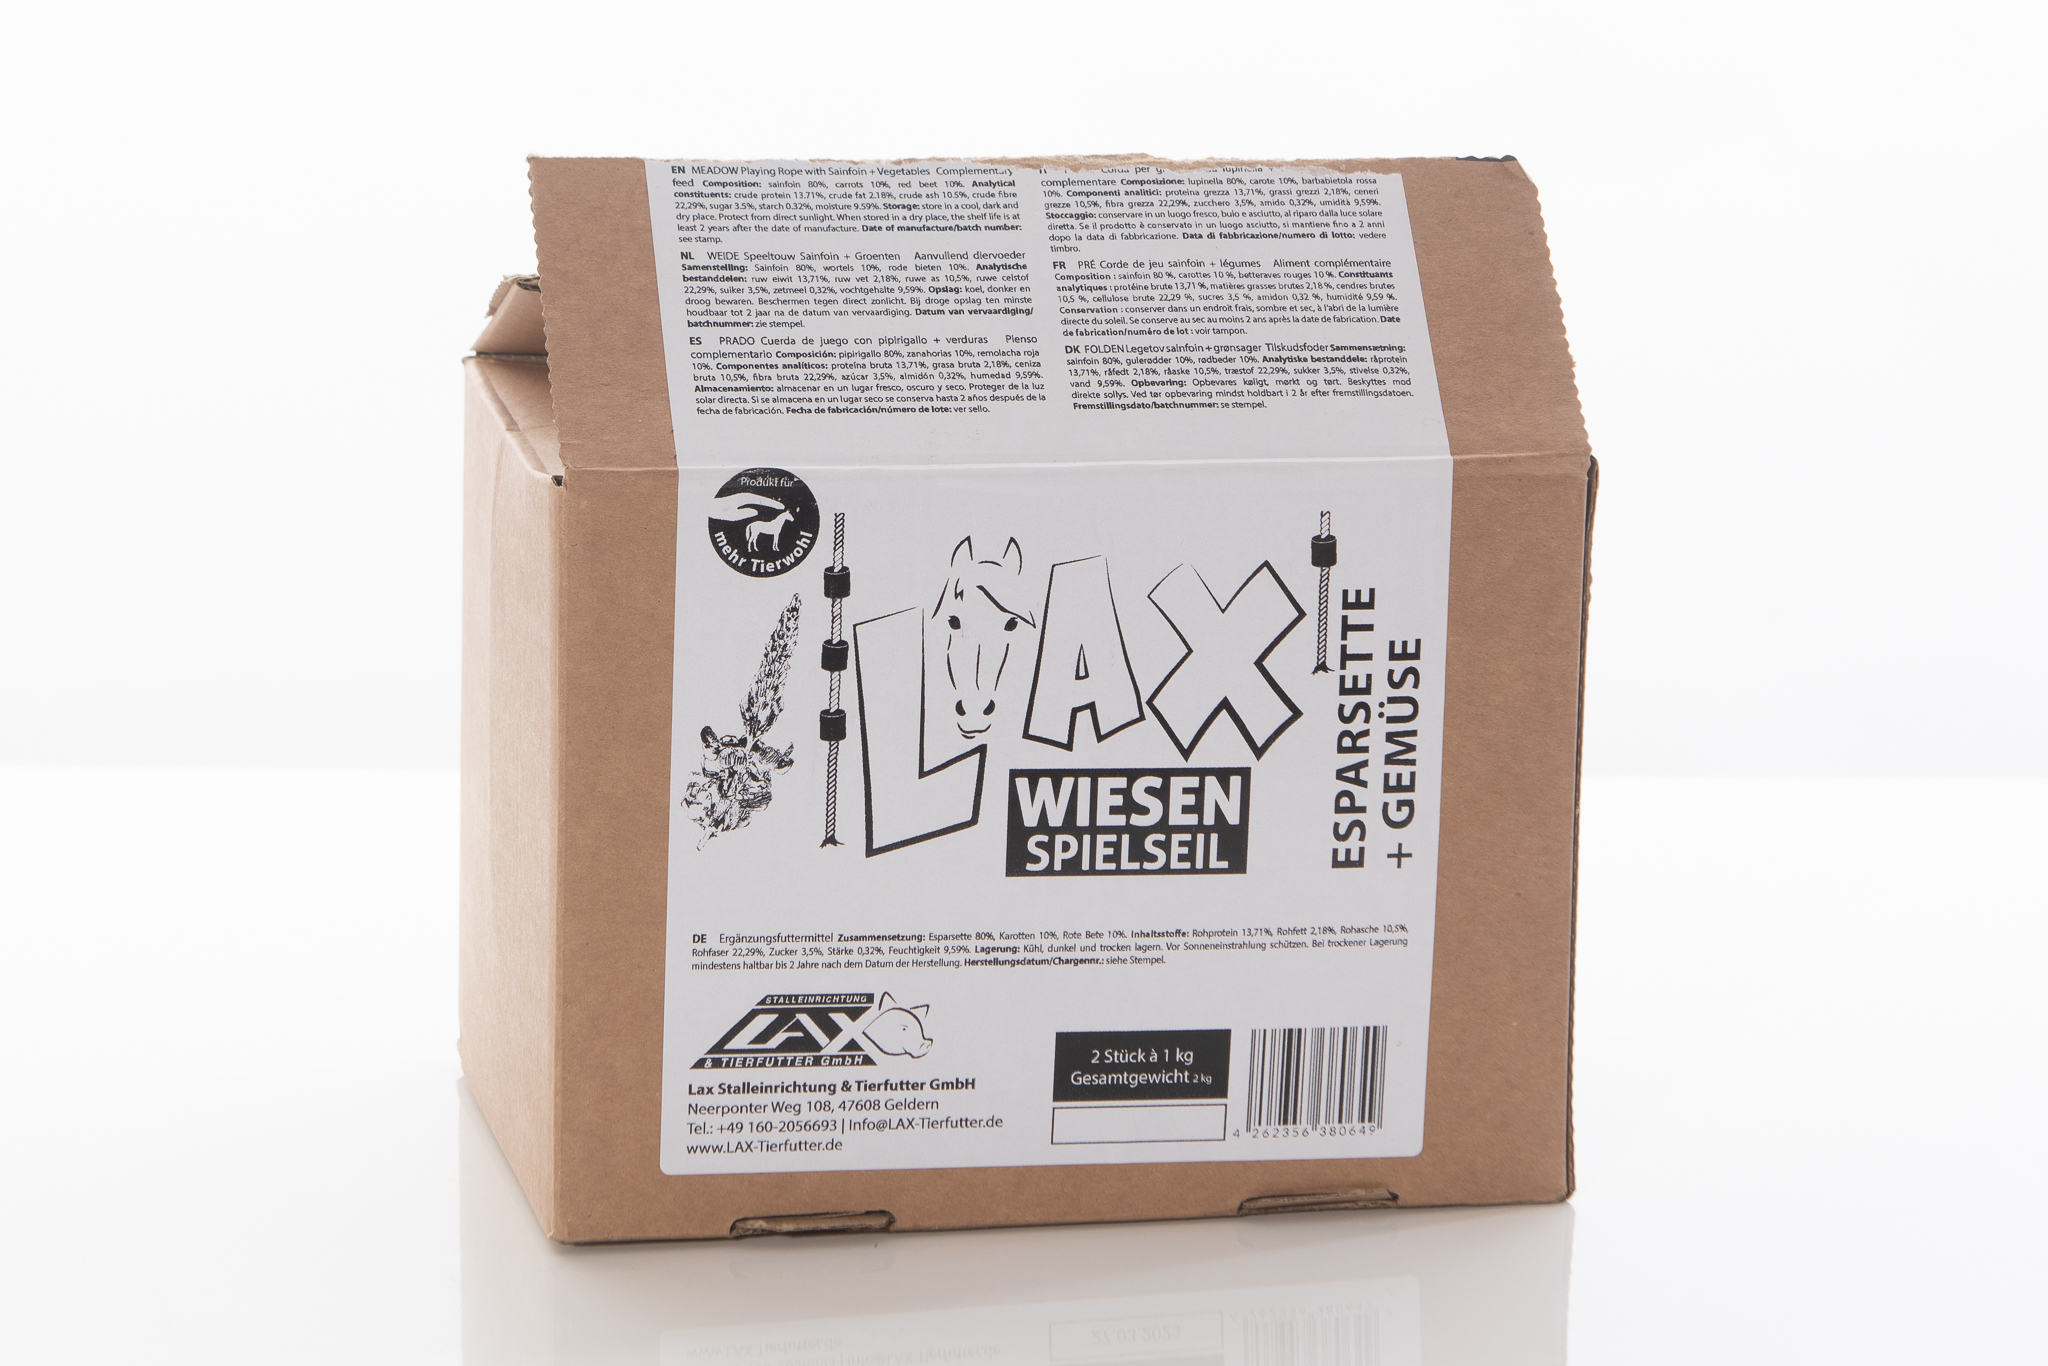 Lax Wiesen Spielseil Esparsette-Gemüse – 2 Stück á 1 kg